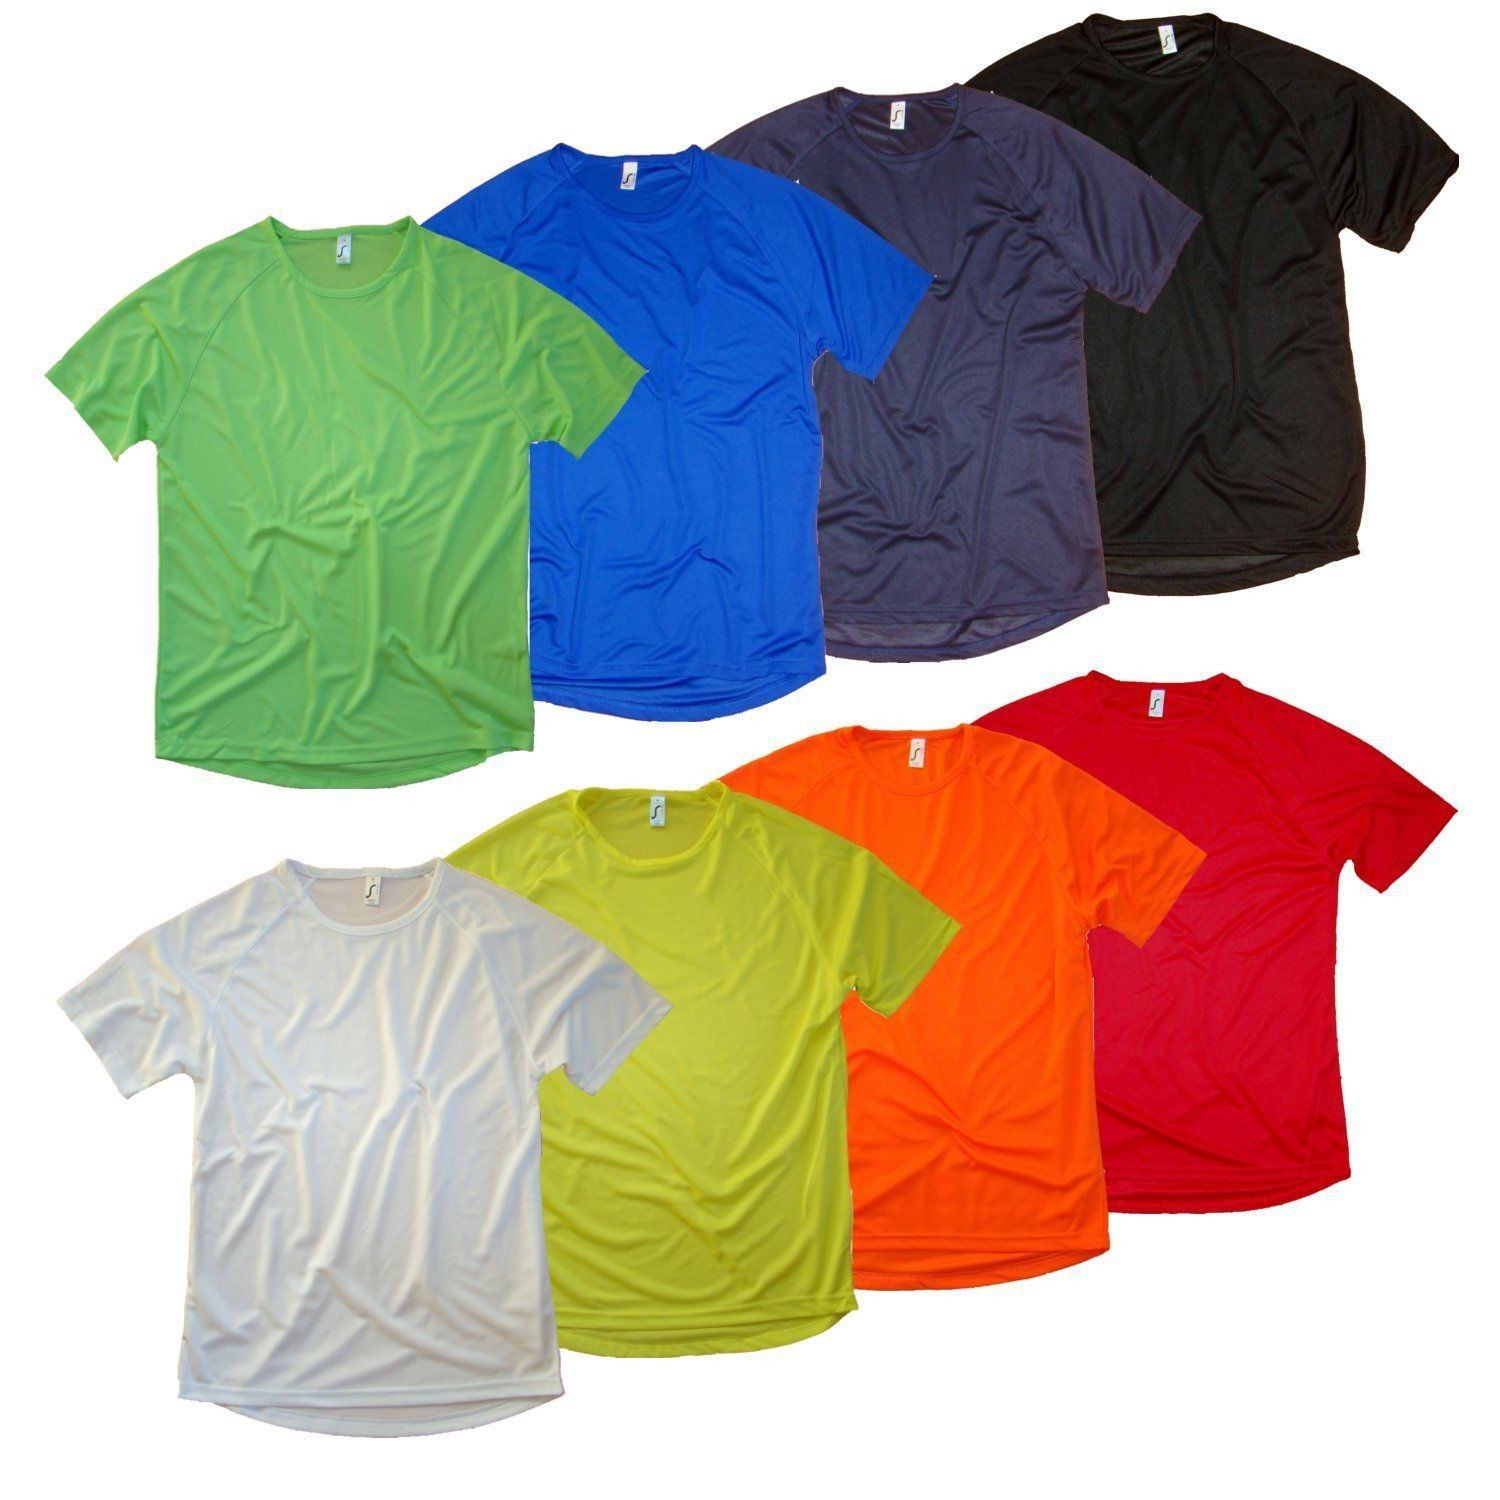 SOL'S SPORTY - Funktionsshirt  für Sport in 8 Farben - T-Shirt - Gr. S bis XXXL